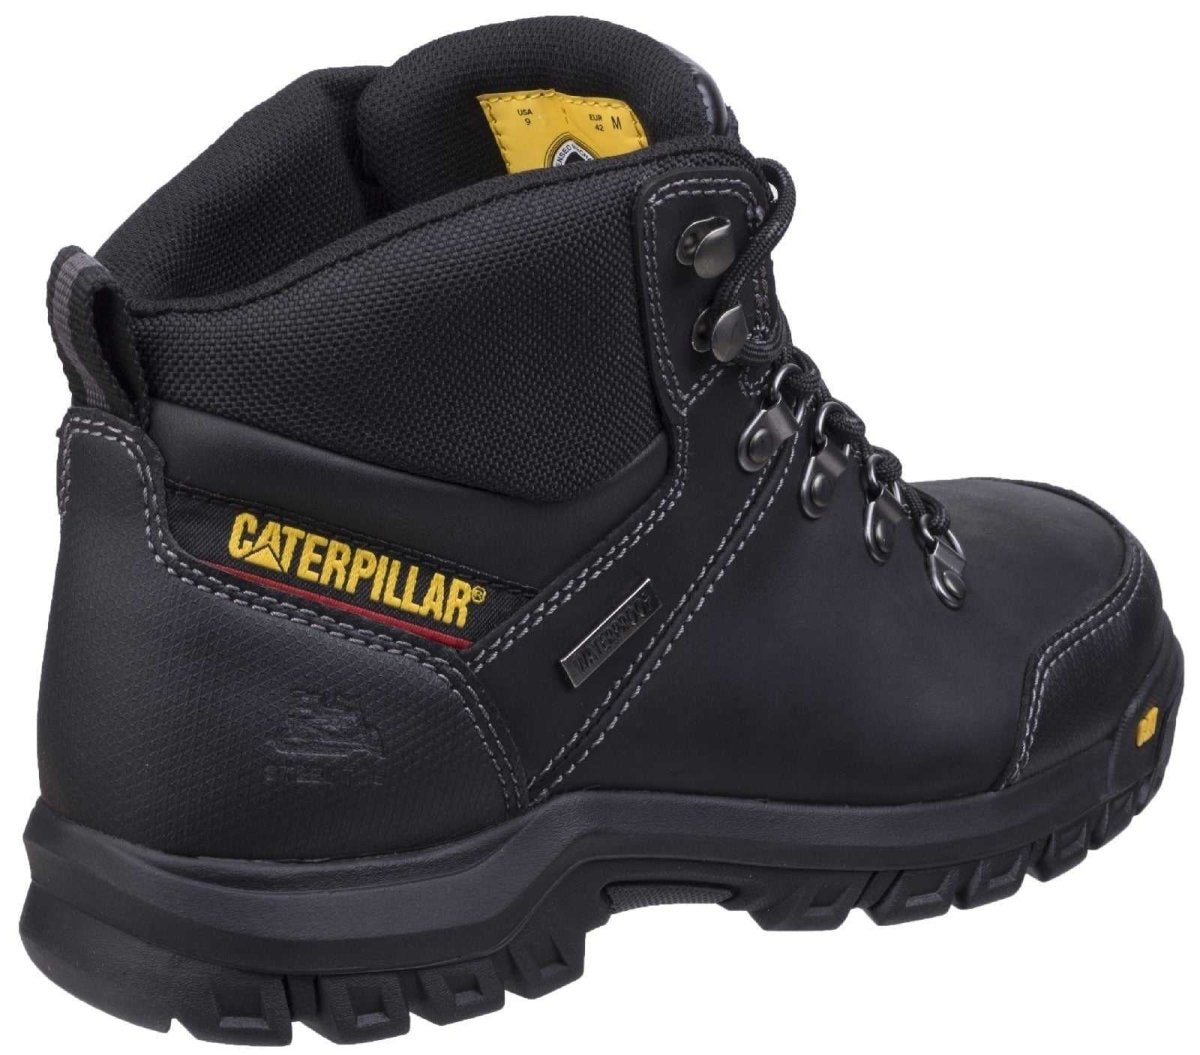 Caterpillar Framework S3 Hiker Safety Boots - Shoe Store Direct